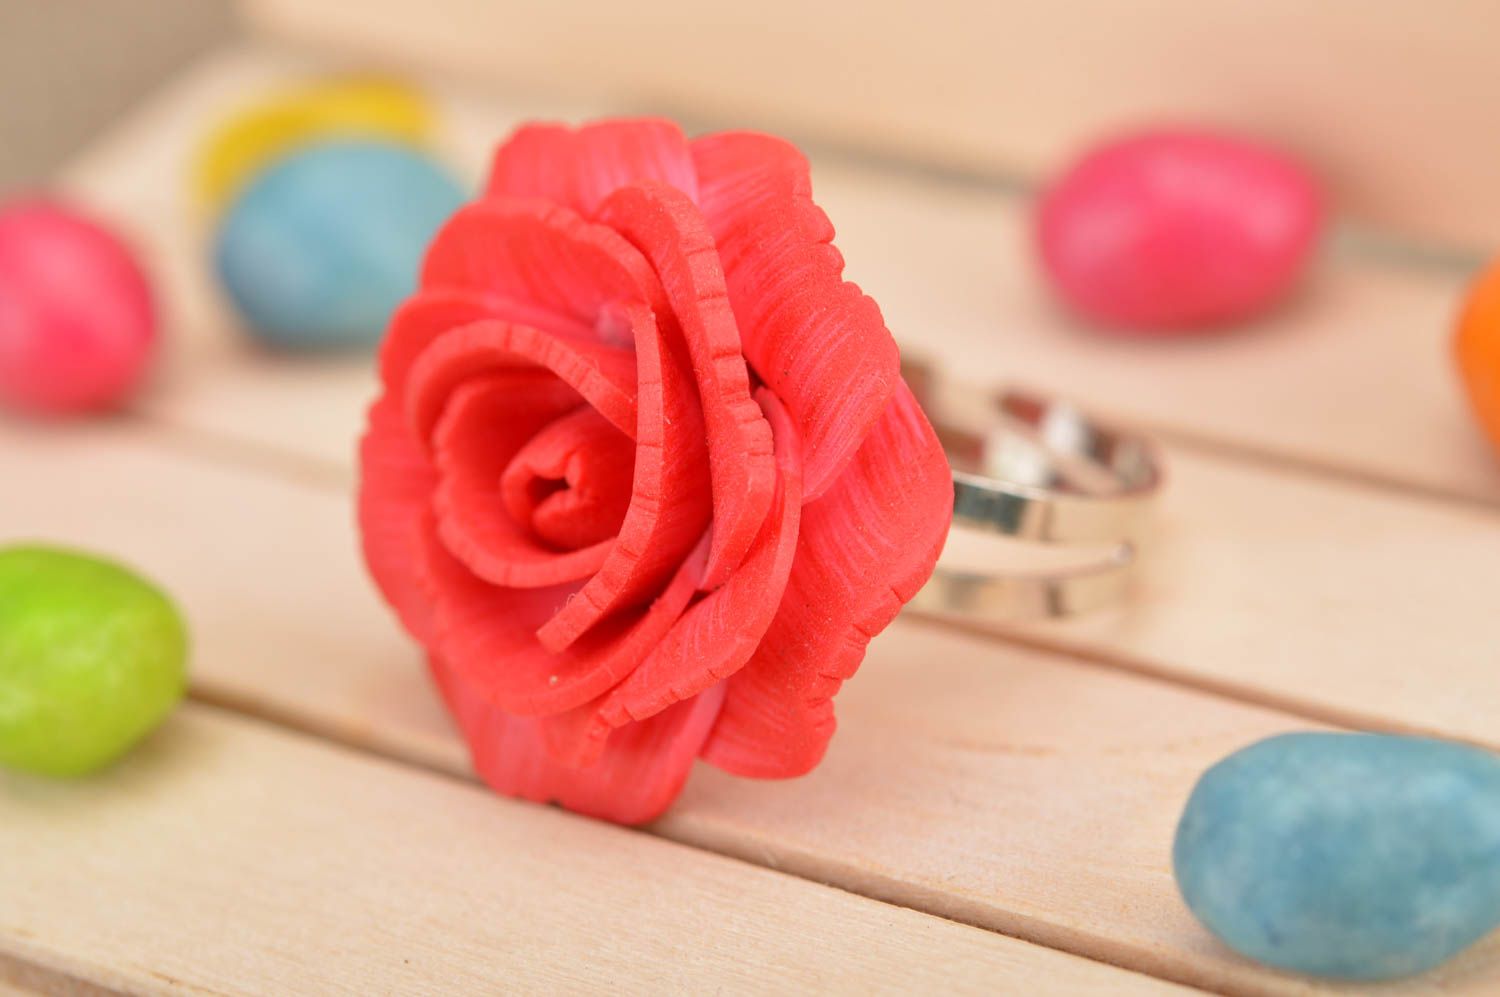 Кольцо из полимерной глины в виде красной пышной розы ручной работы авторское фото 1